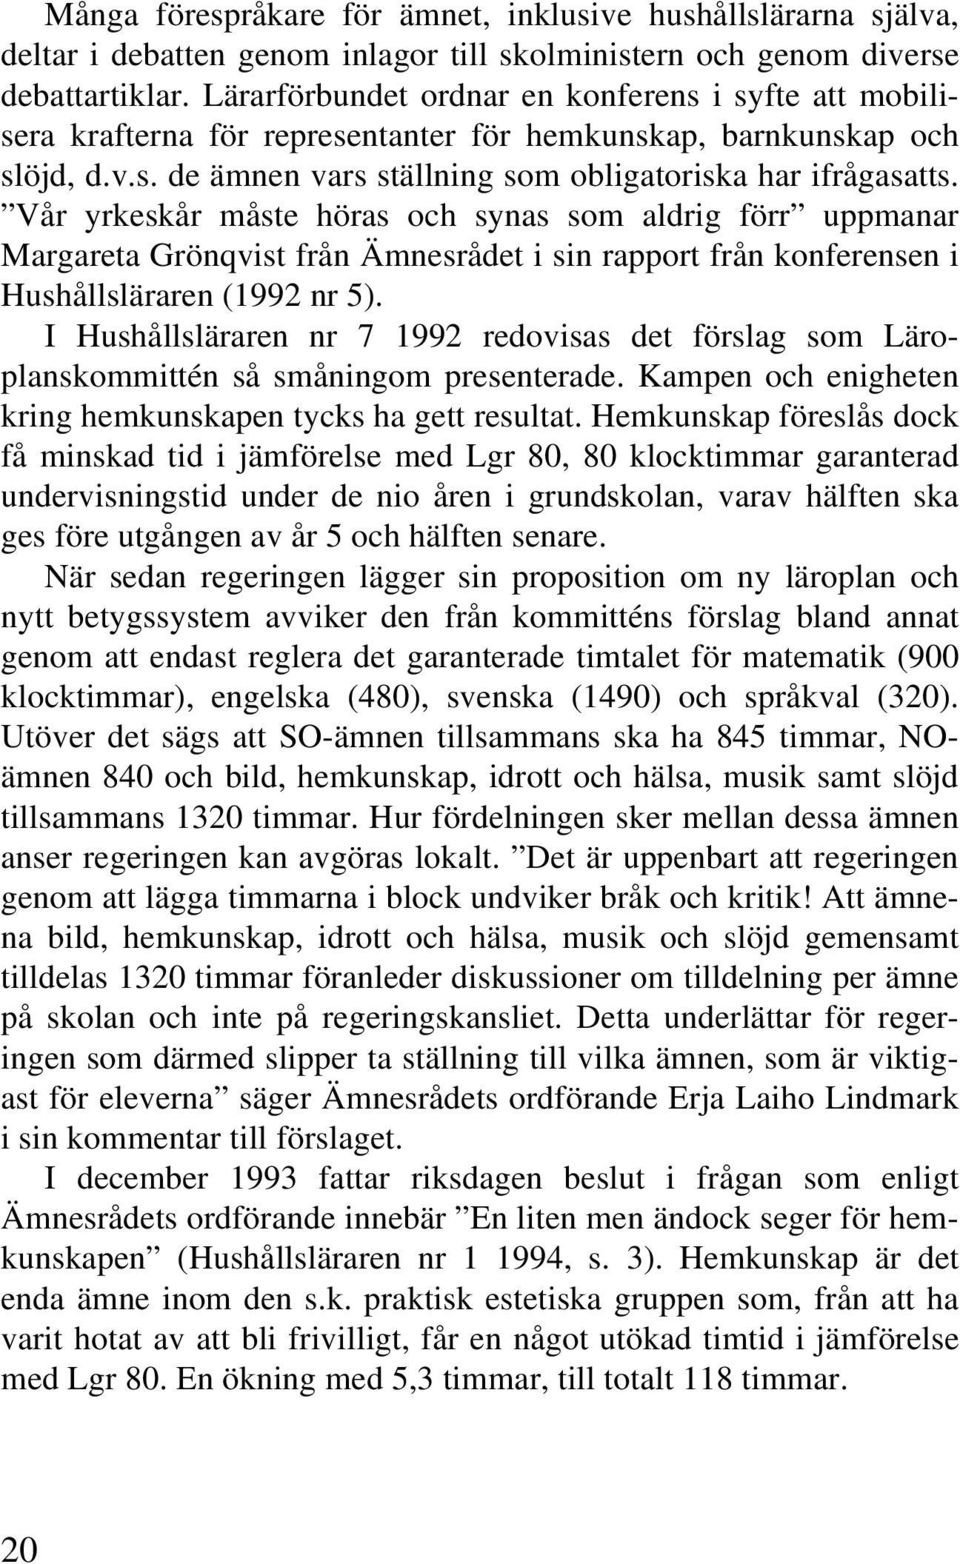 Vår yrkeskår måste höras och synas som aldrig förr uppmanar Margareta Grönqvist från Ämnesrådet i sin rapport från konferensen i Hushållsläraren (1992 nr 5).